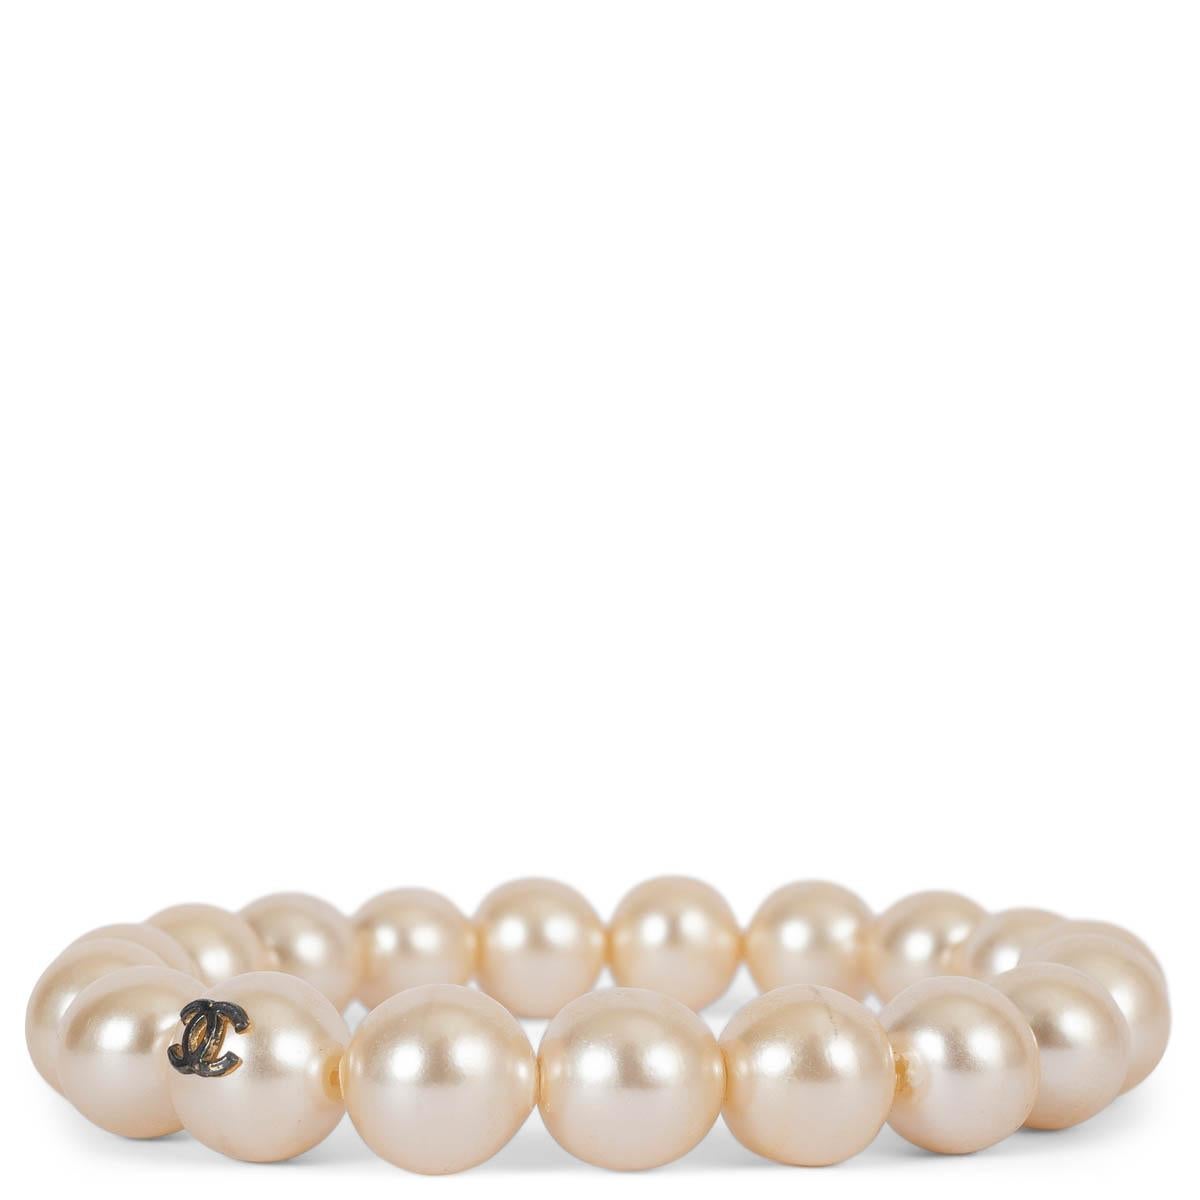 100% authentische Chanel faux Perle elastisches Armband mit Rotguss CC auf eine Perle. Wurde getragen und ist in ausgezeichnetem Zustand. 

Messungen
Umfang	19.2 (fällt groß aus und ist elastisch)

Alle unsere Angebote umfassen nur den aufgeführten